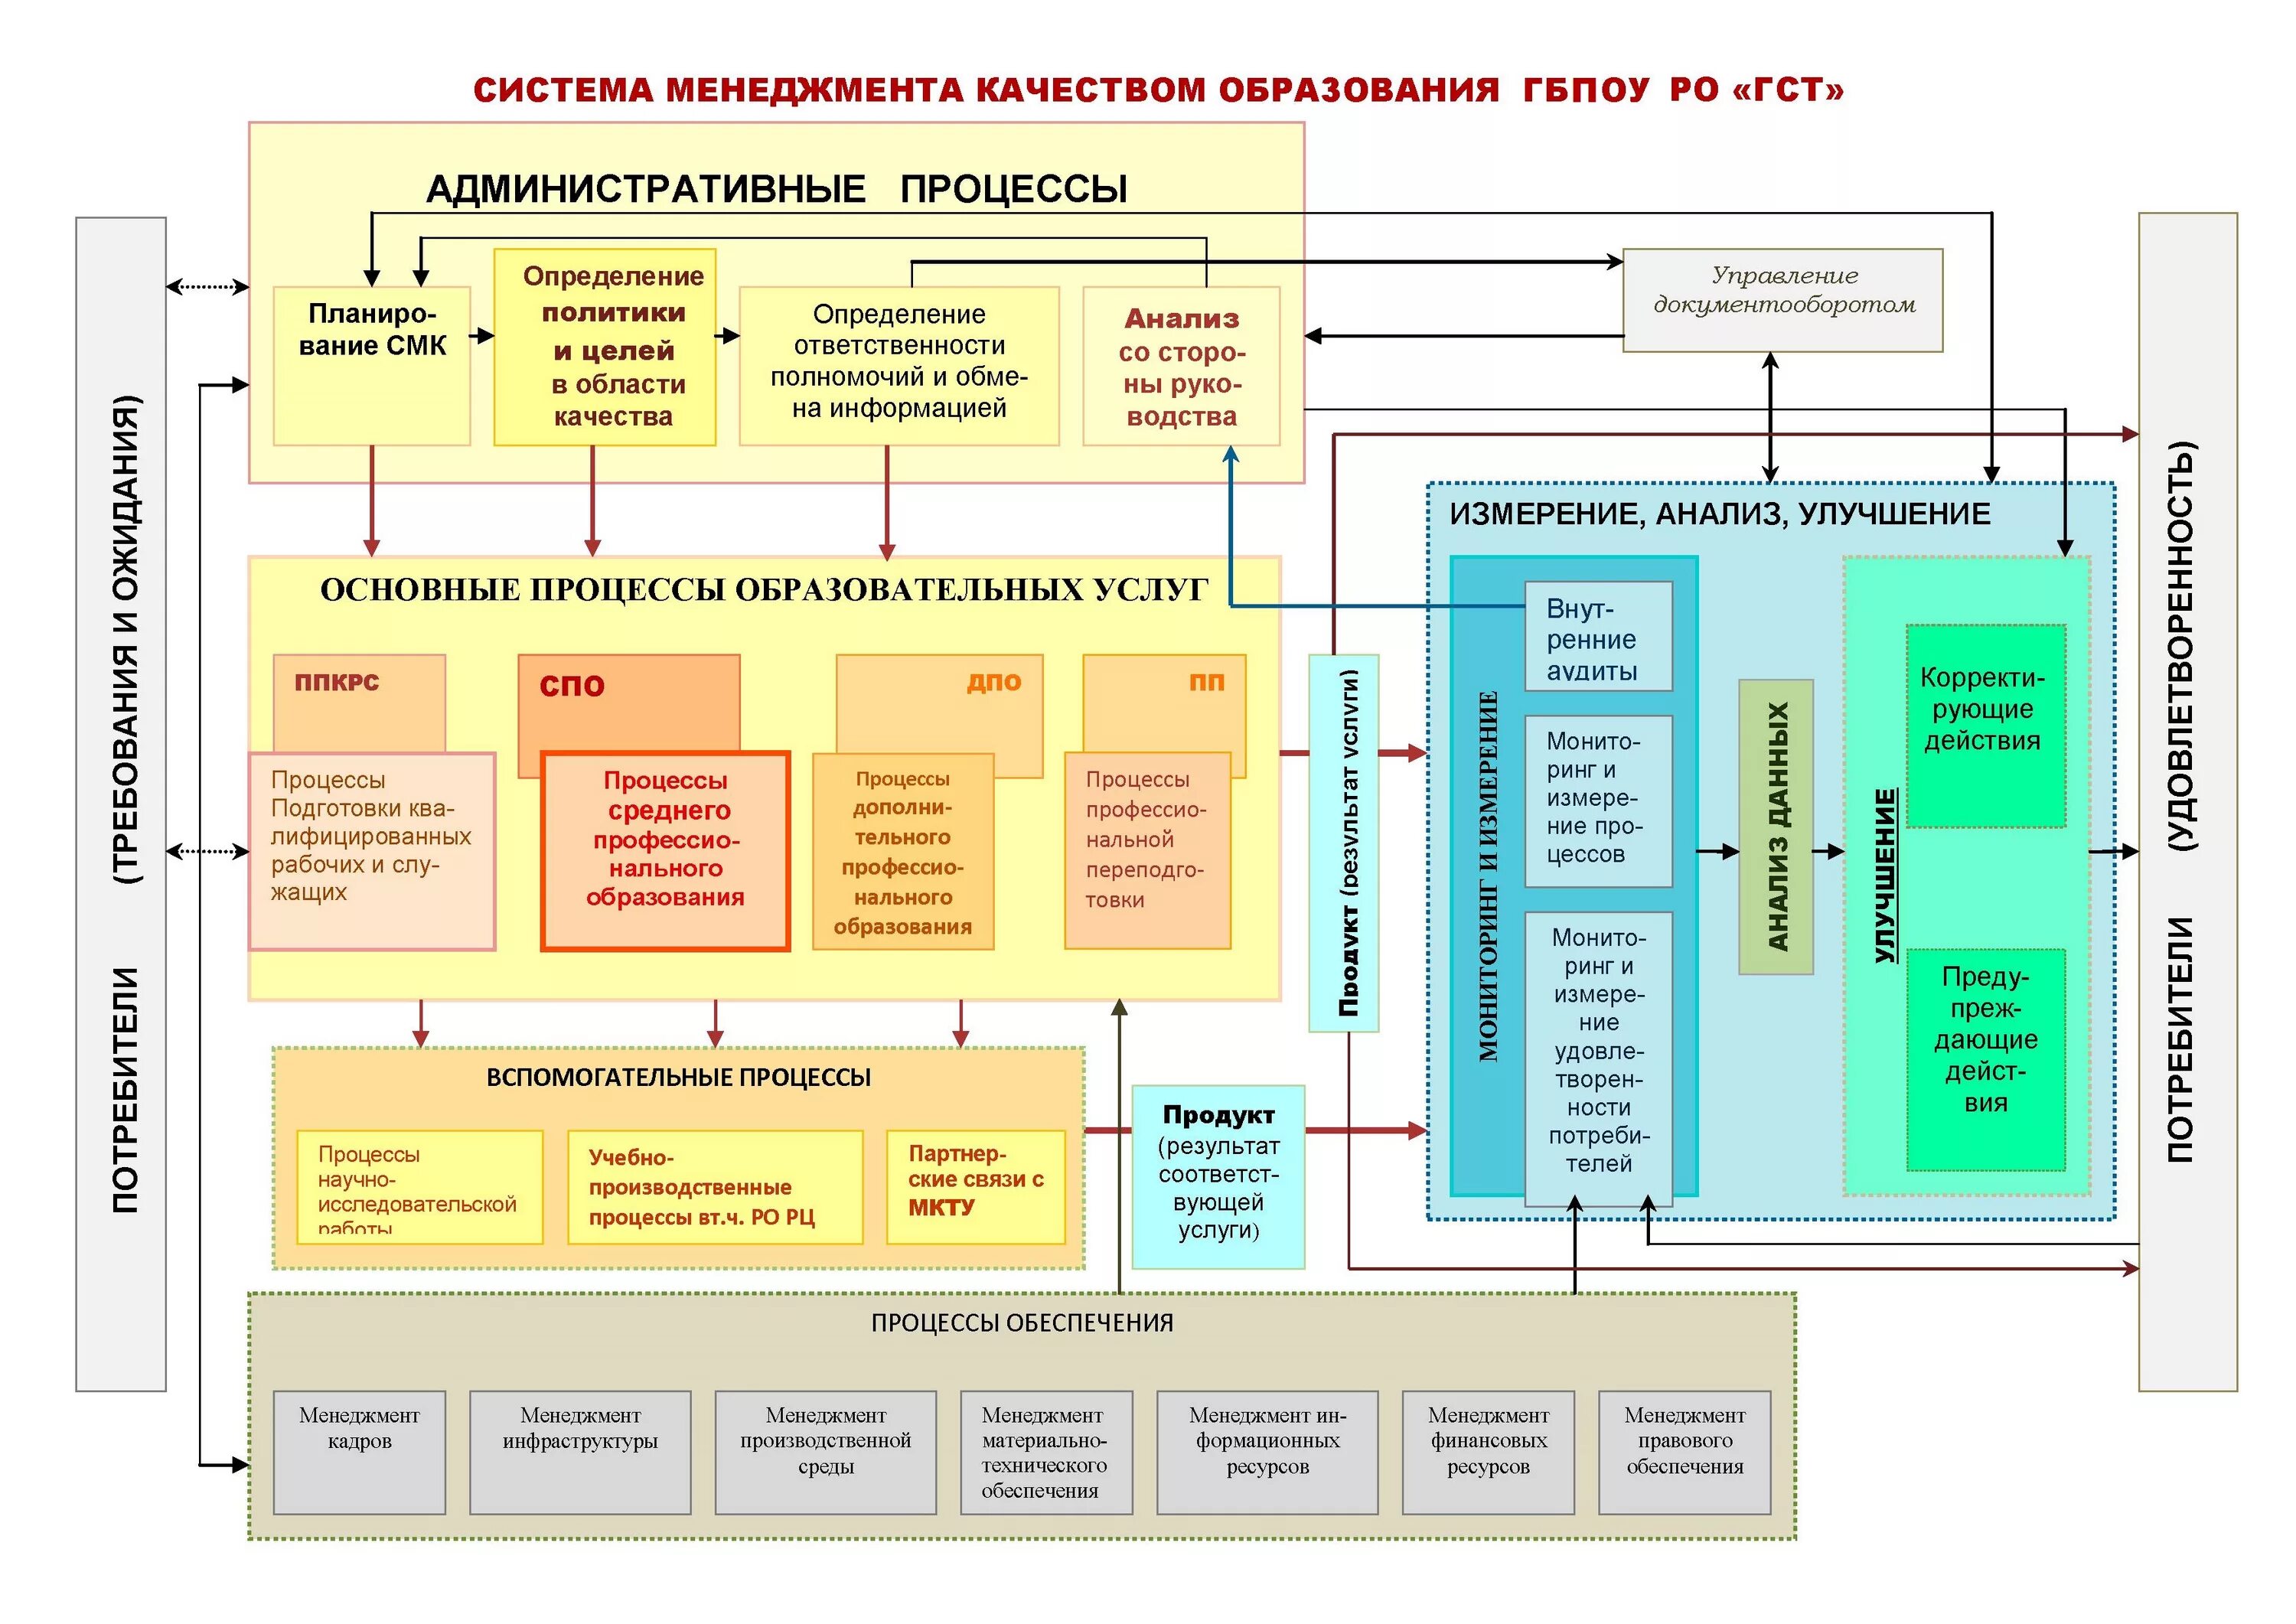 Пример системы менеджмента качества. Управление системой в СМК. Схема процессов СМК на предприятии. Схема взаимодействия процессов СМК 9001-2015. Процессы системы менеджмента качества на предприятии.